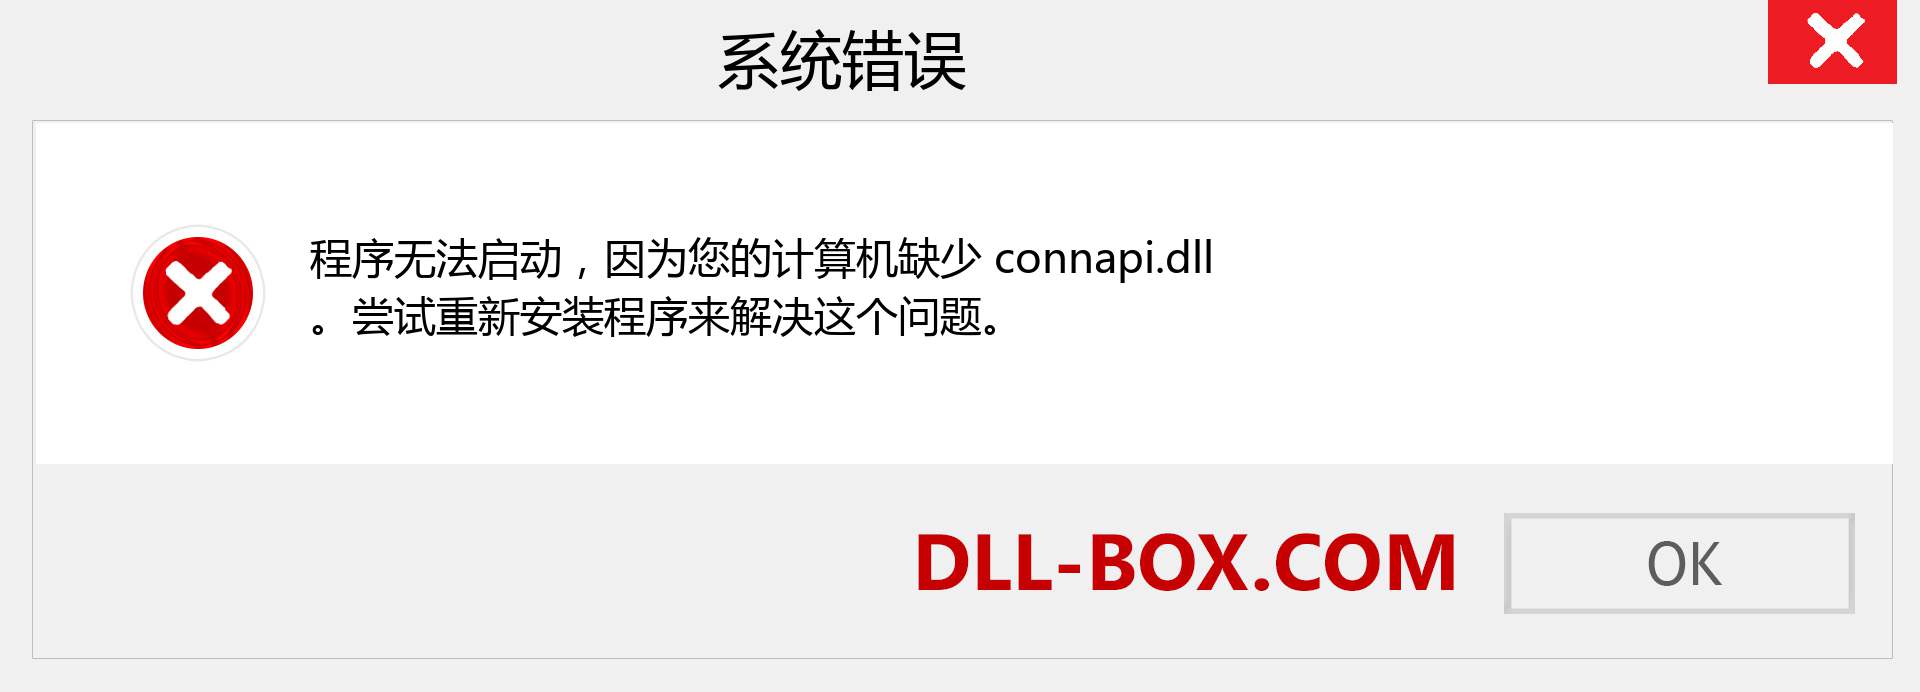 connapi.dll 文件丢失？。 适用于 Windows 7、8、10 的下载 - 修复 Windows、照片、图像上的 connapi dll 丢失错误